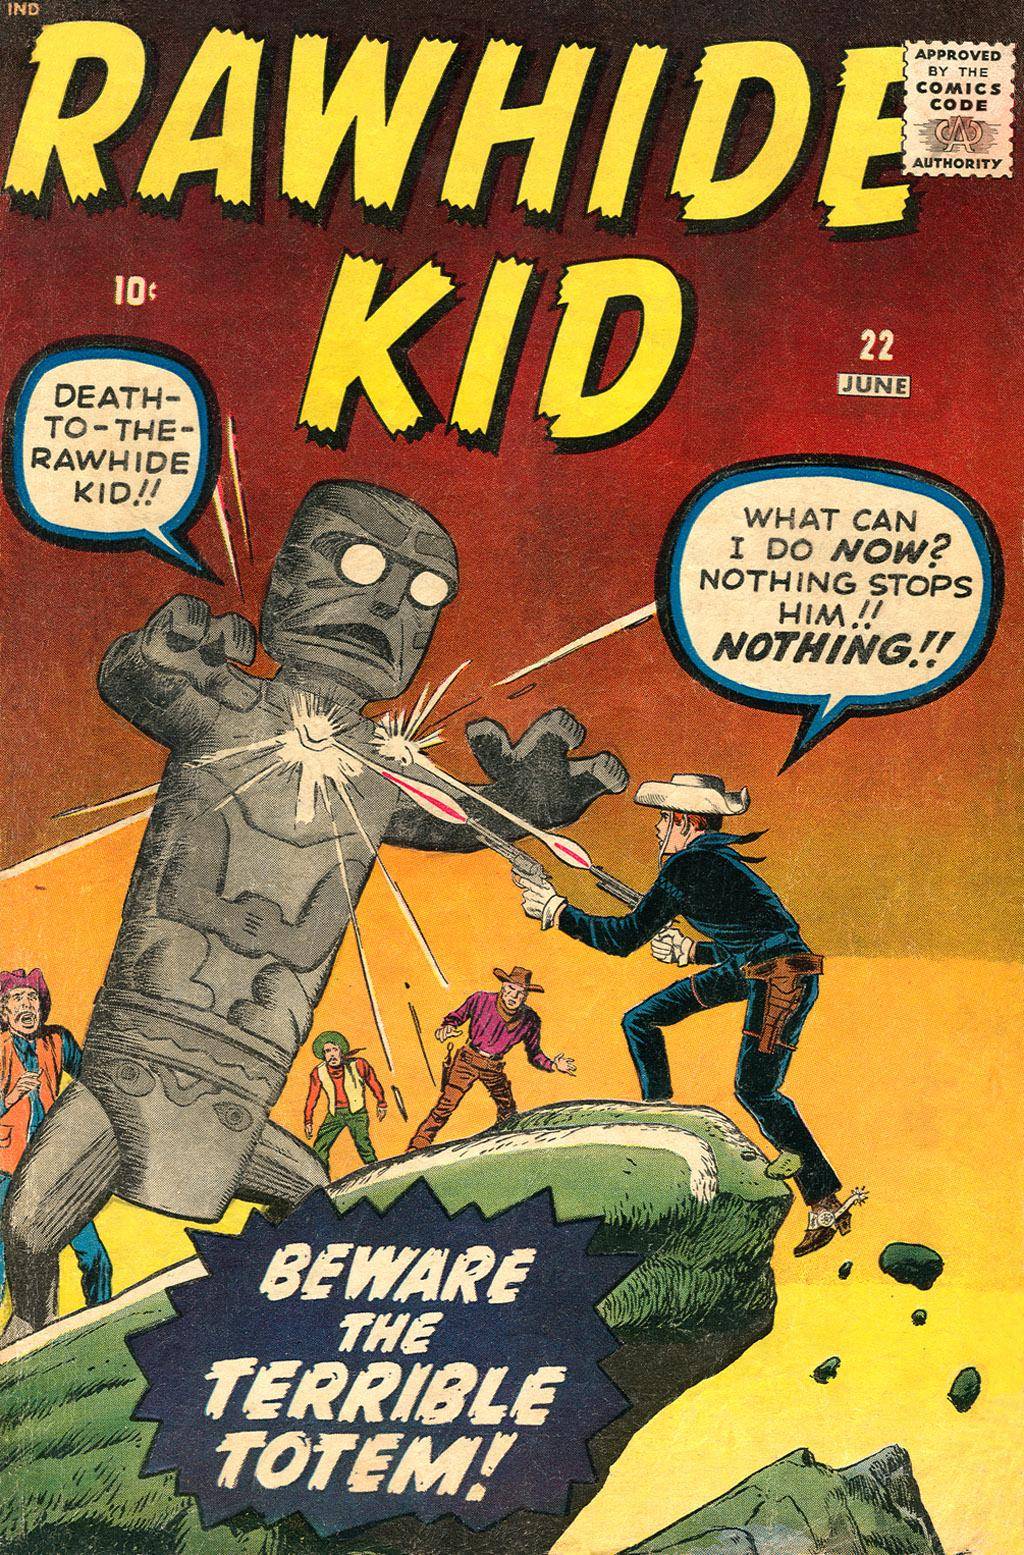 Rawhide Kid v1 022 1961 brigus